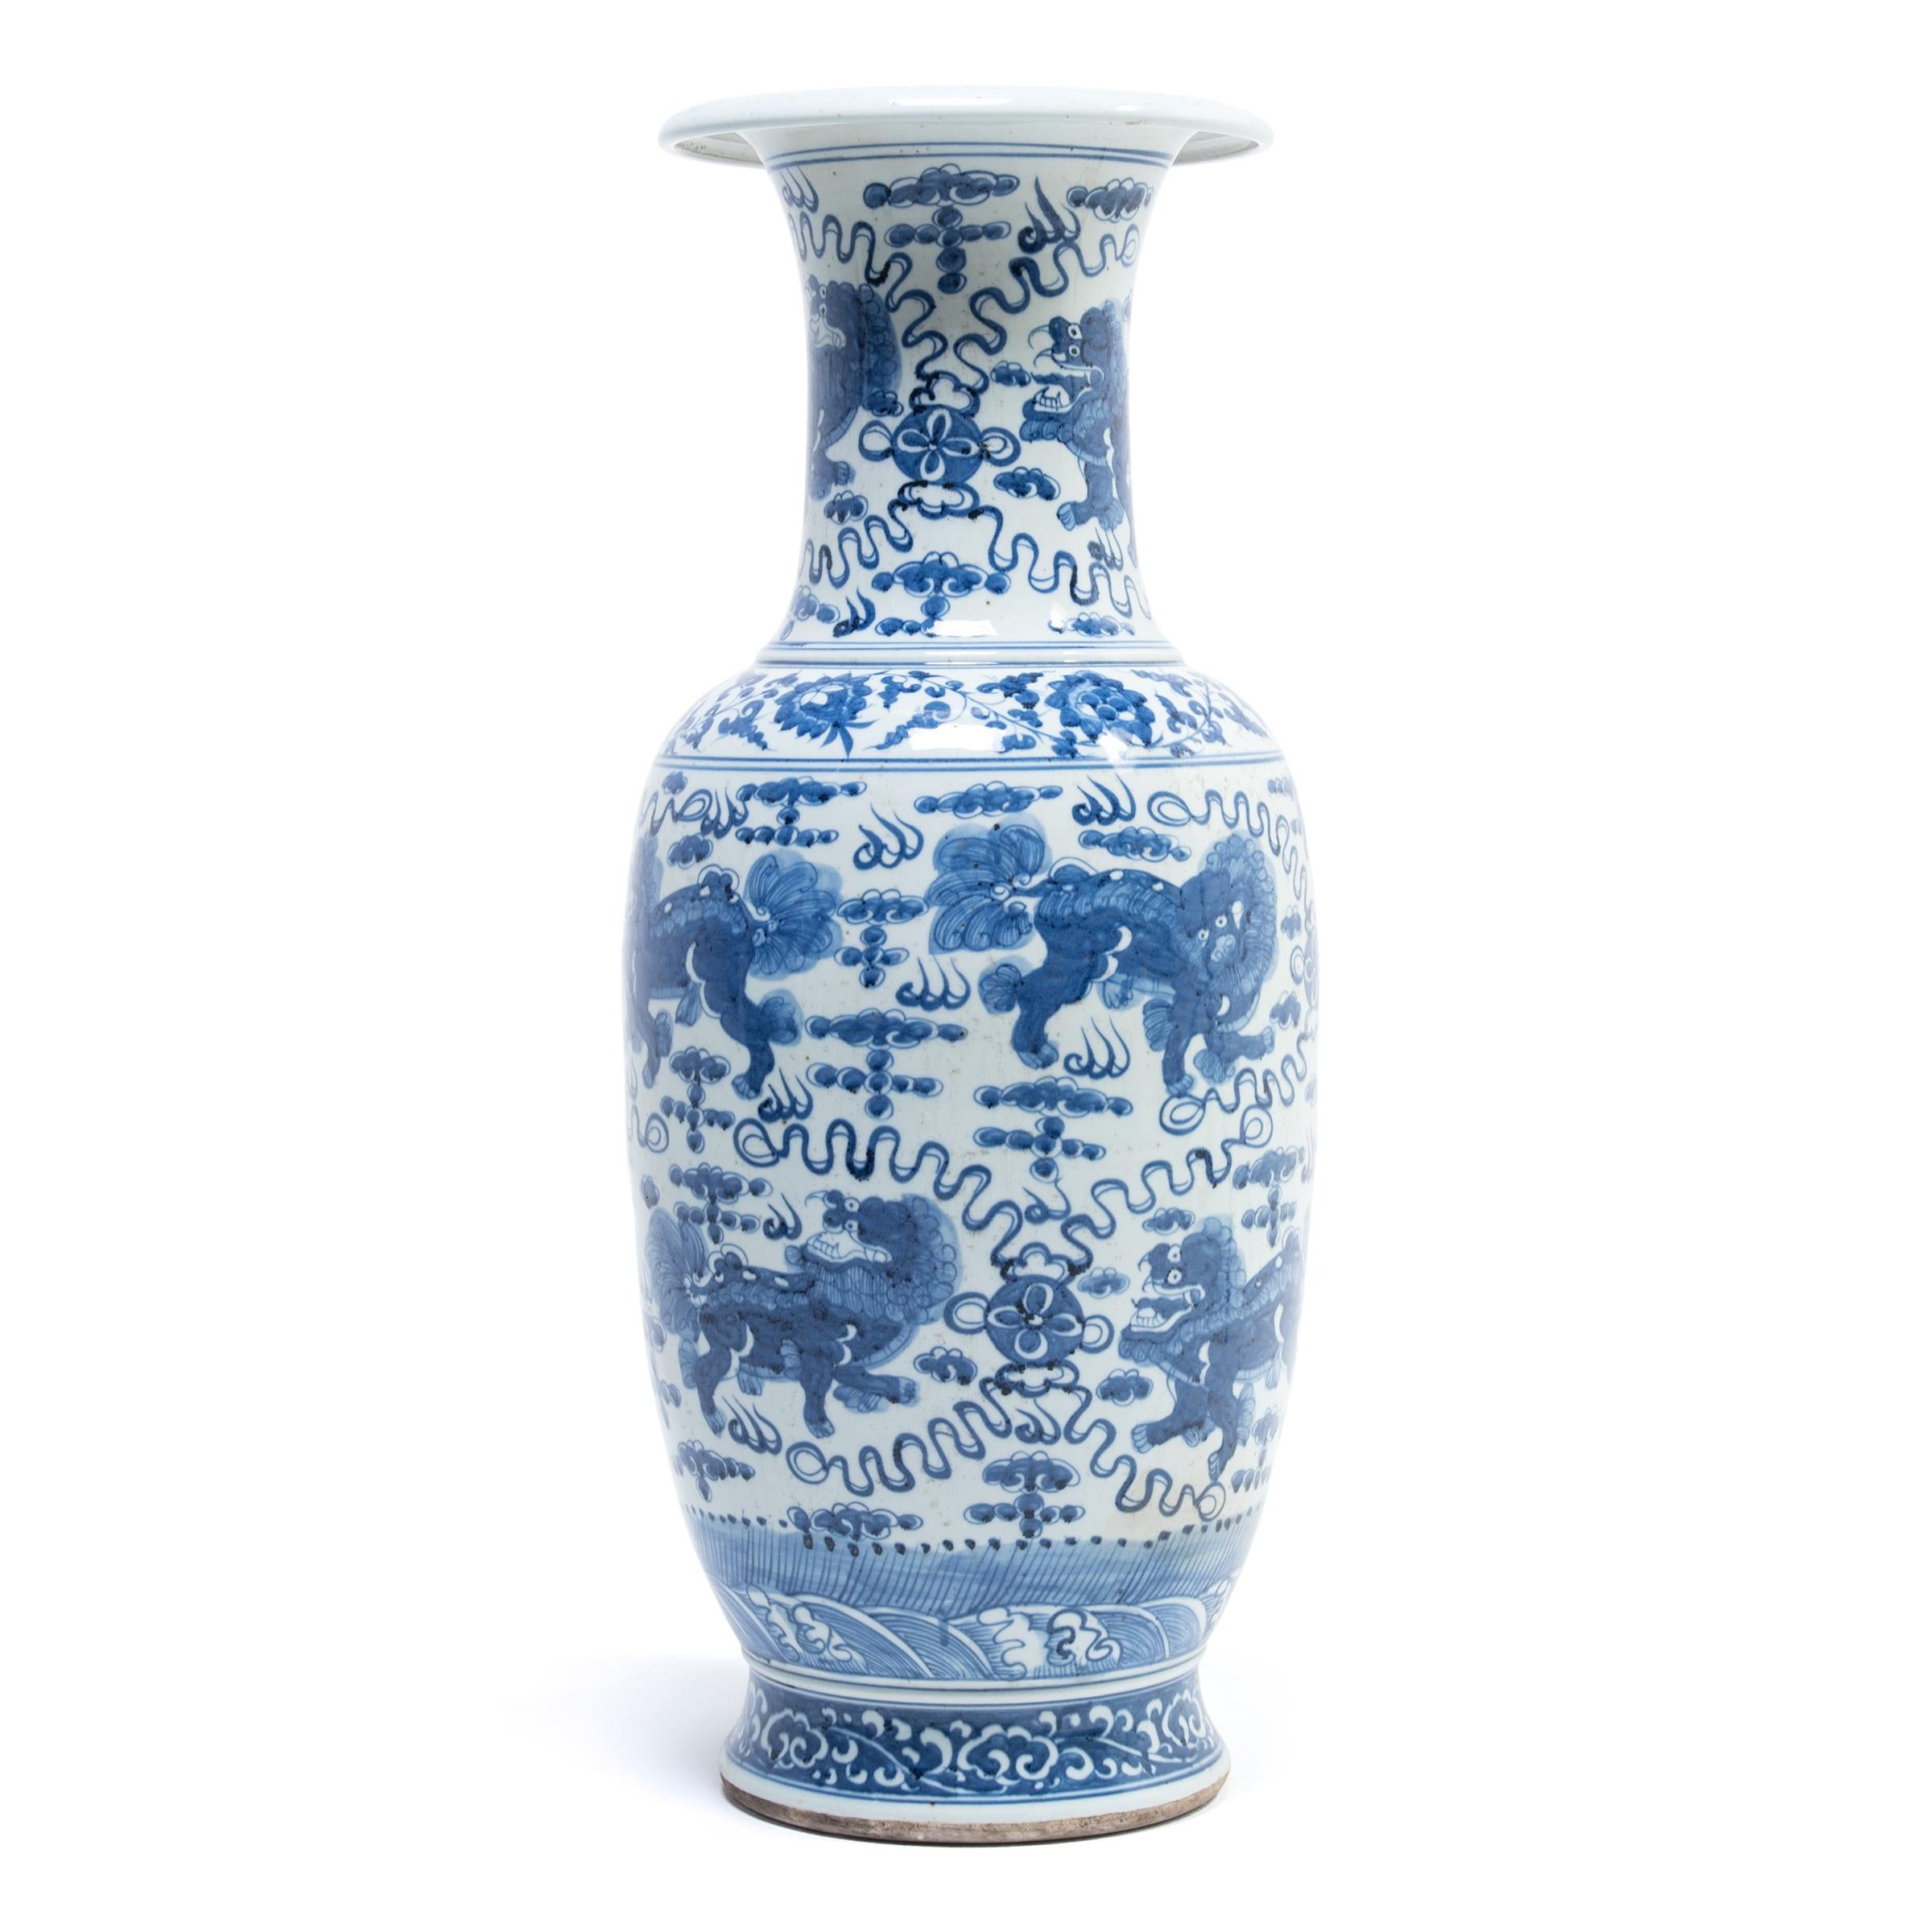 Un défilé de Qilin, créatures mythiques chinoises symbolisant la magnificence, la joie et la bienveillance, défile autour de ce vase à queue de fantôme en porcelaine peint à la main. Il s'agit d'un merveilleux exemple de porcelaine chinoise